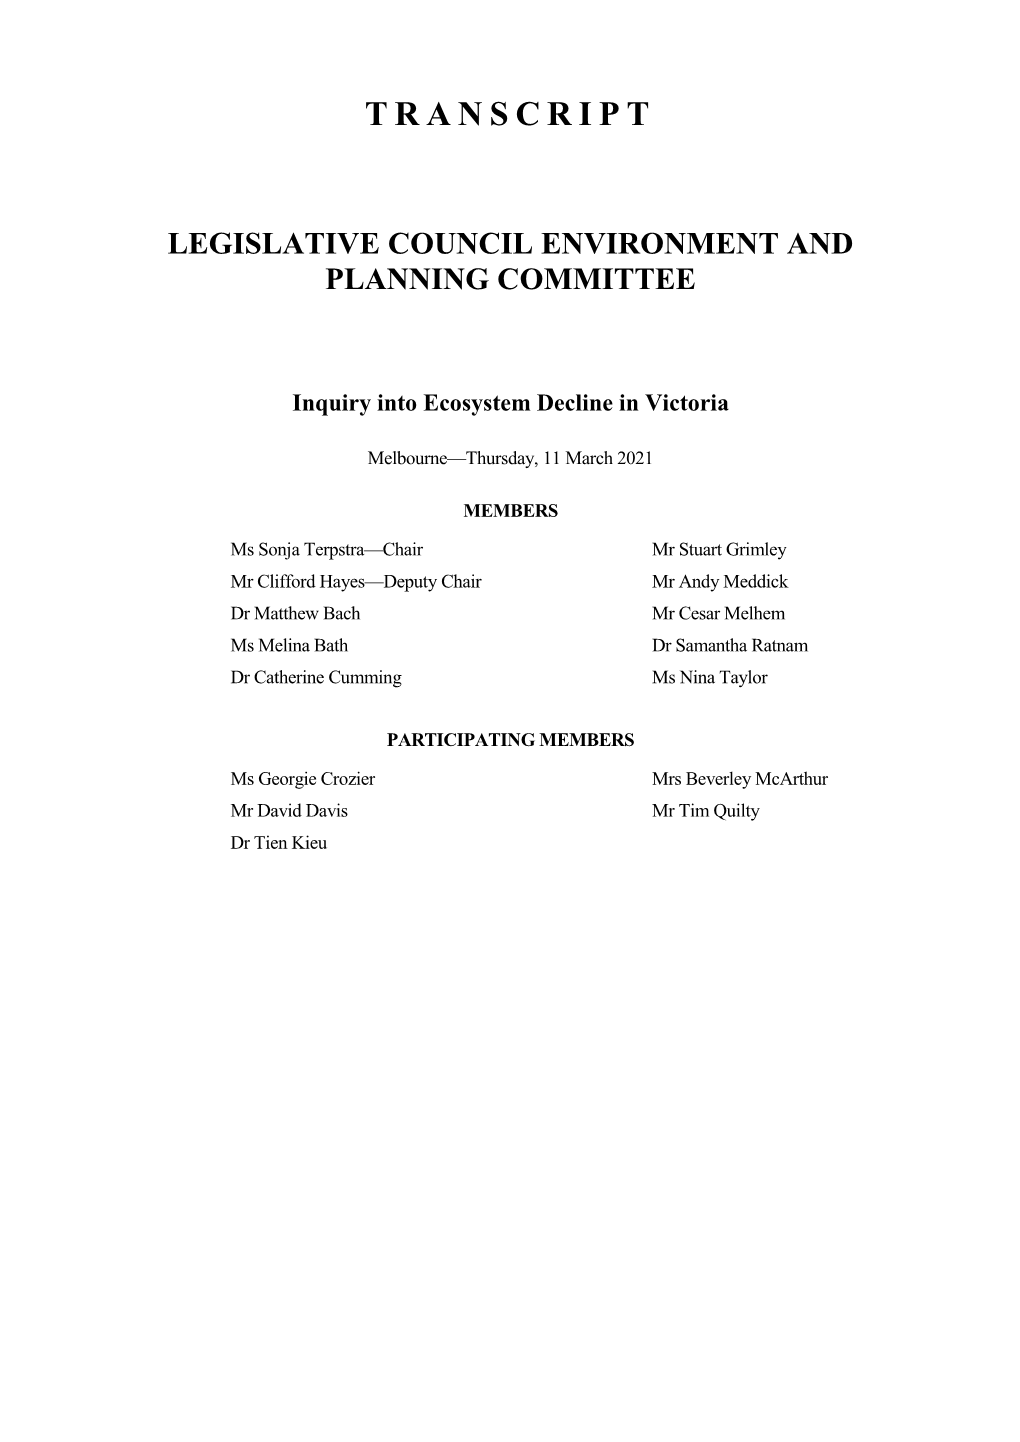 Transcript Legislative Council Environment